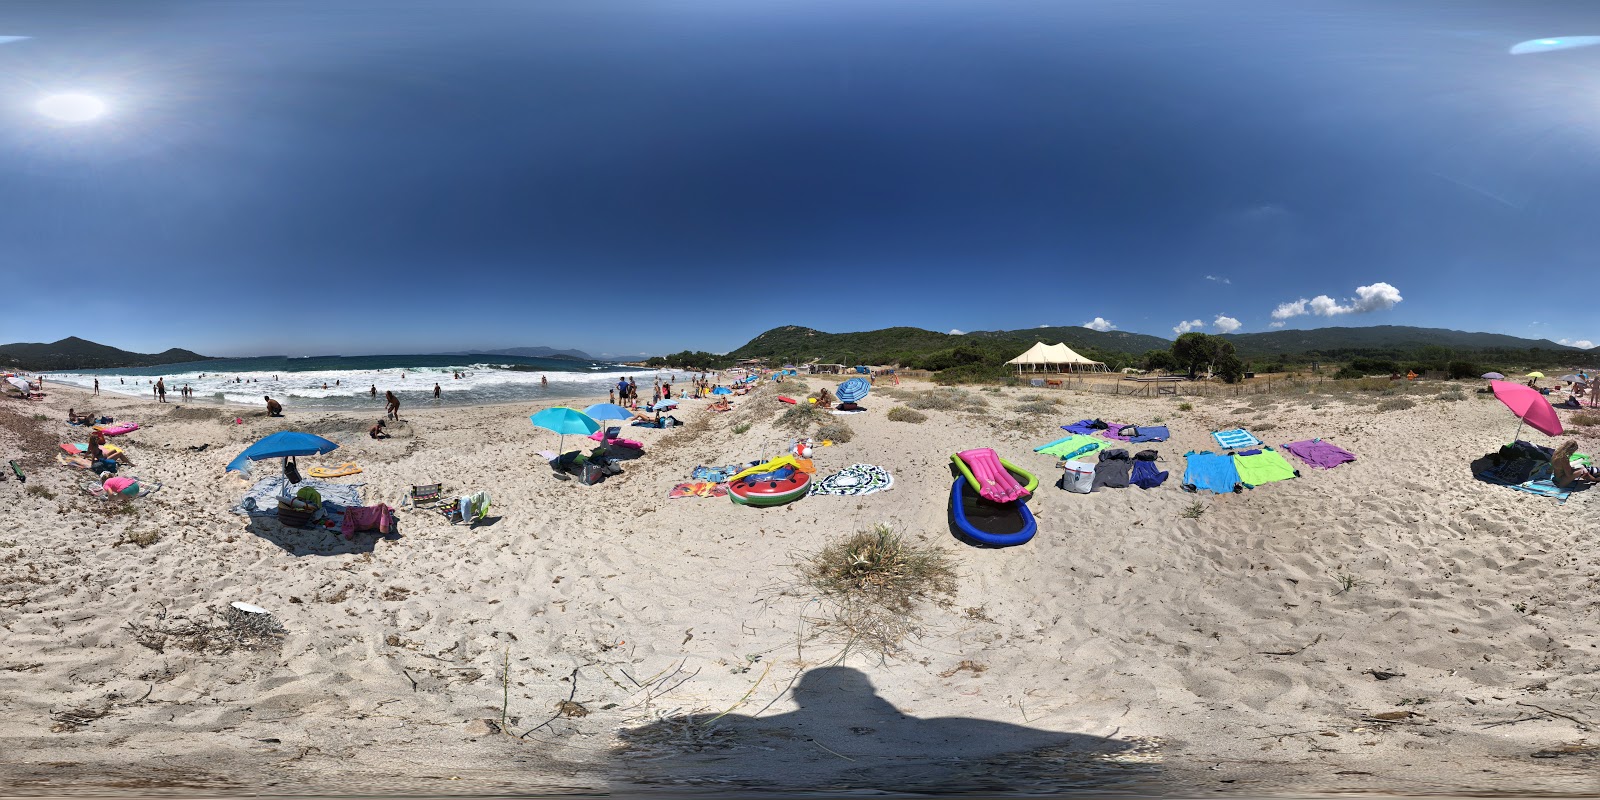 Photo de Ruppione beach - endroit populaire parmi les connaisseurs de la détente